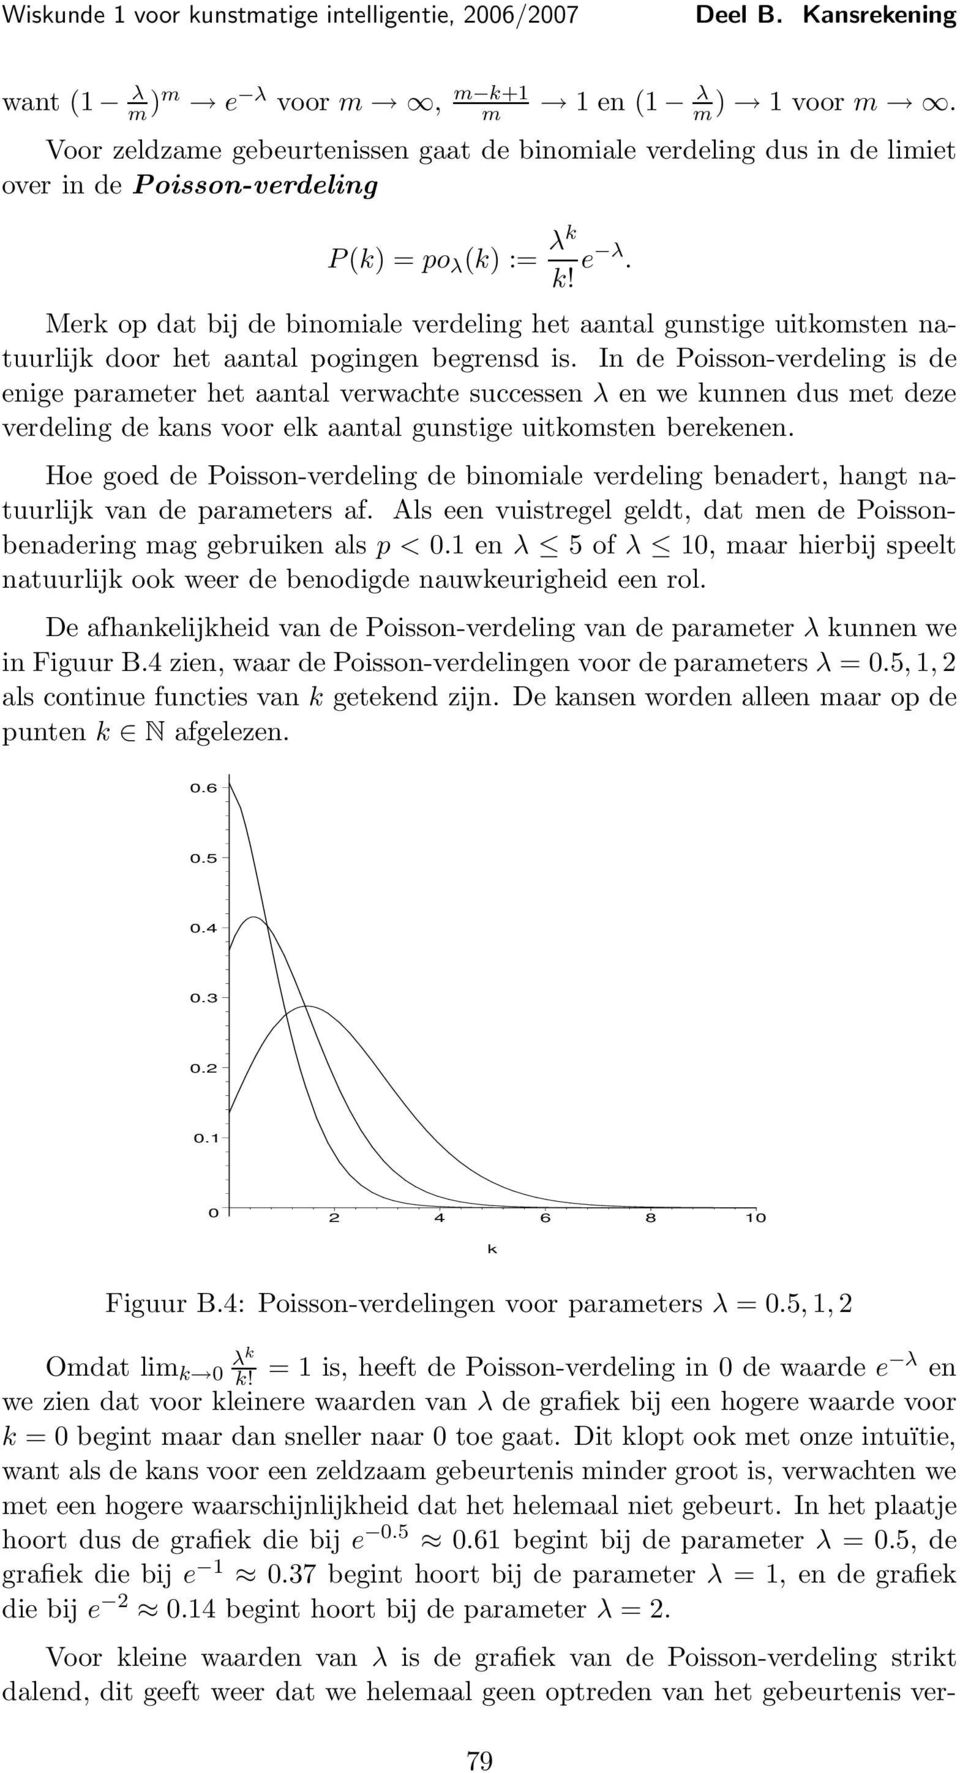 Hoe goed de Poisson-verdeling de binomiale verdeling benadert, hangt natuurlijk van de parameters af. Als een vuistregel geldt, dat men de Poissonbenadering mag gebruiken als p < 0.